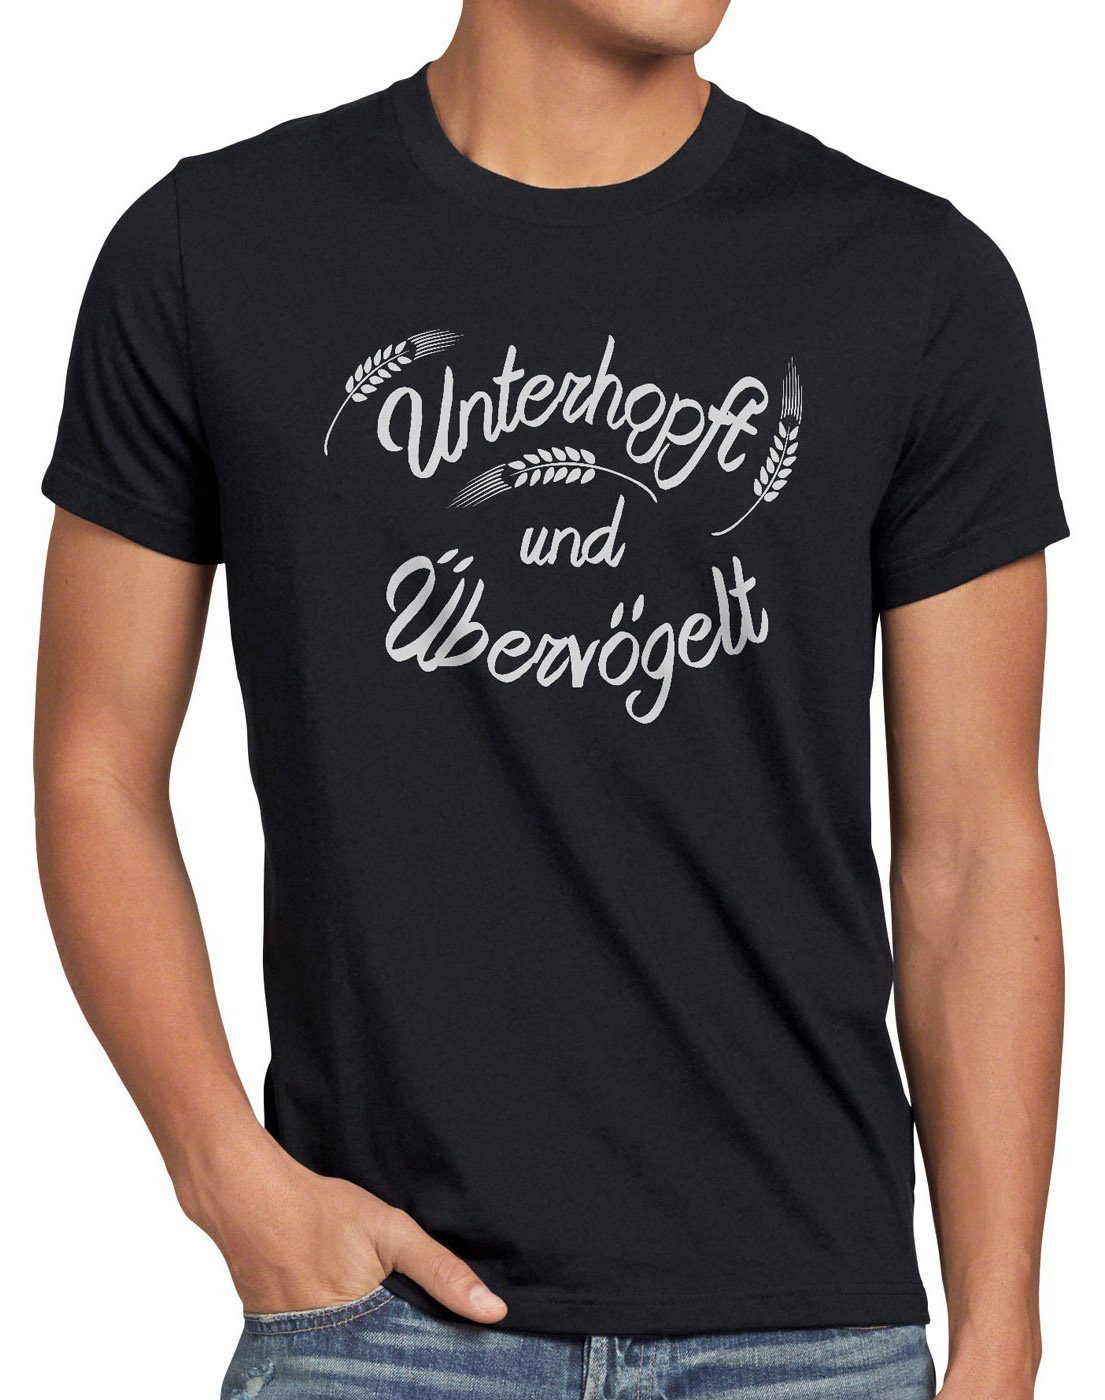 style3 Print-Shirt Spruch schwarz Fun Übervögelt Shirt T-Shirt Kult Bier Herren Funshirt Unterhopft Malz